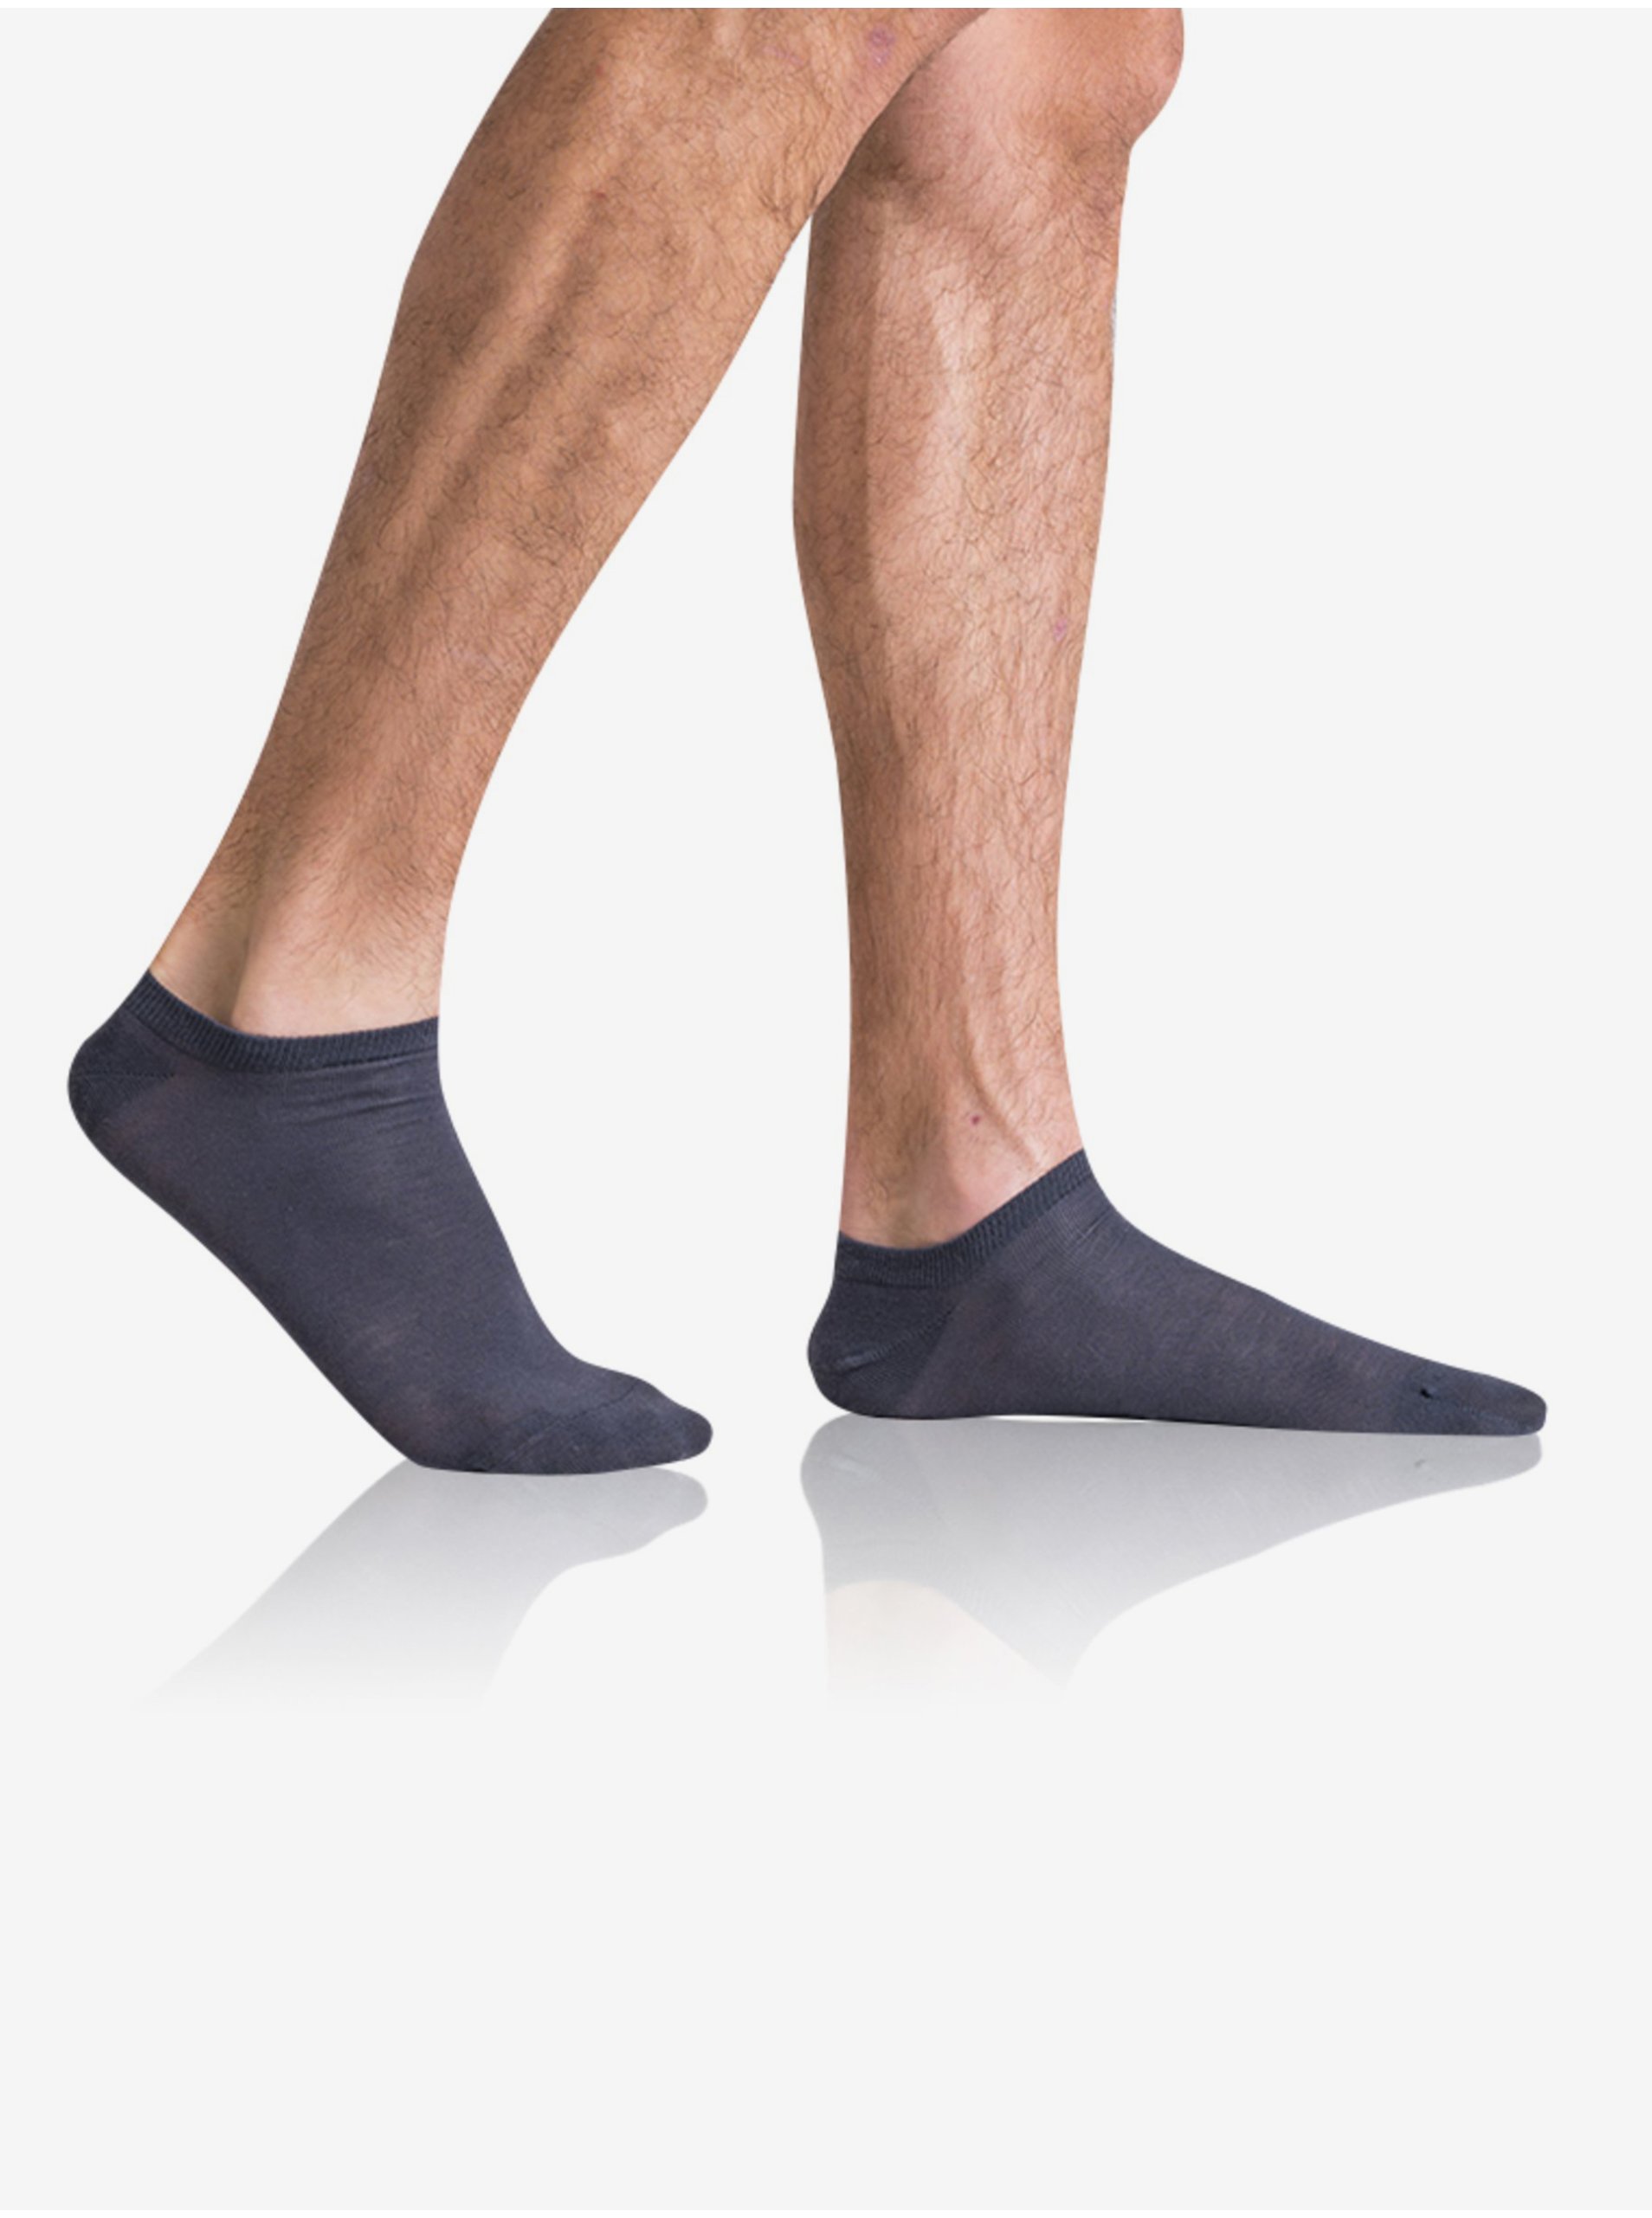 E-shop Šedé pánské ponožky Bellinda GREEN ECOSMART MEN IN-SHOE SOCKS